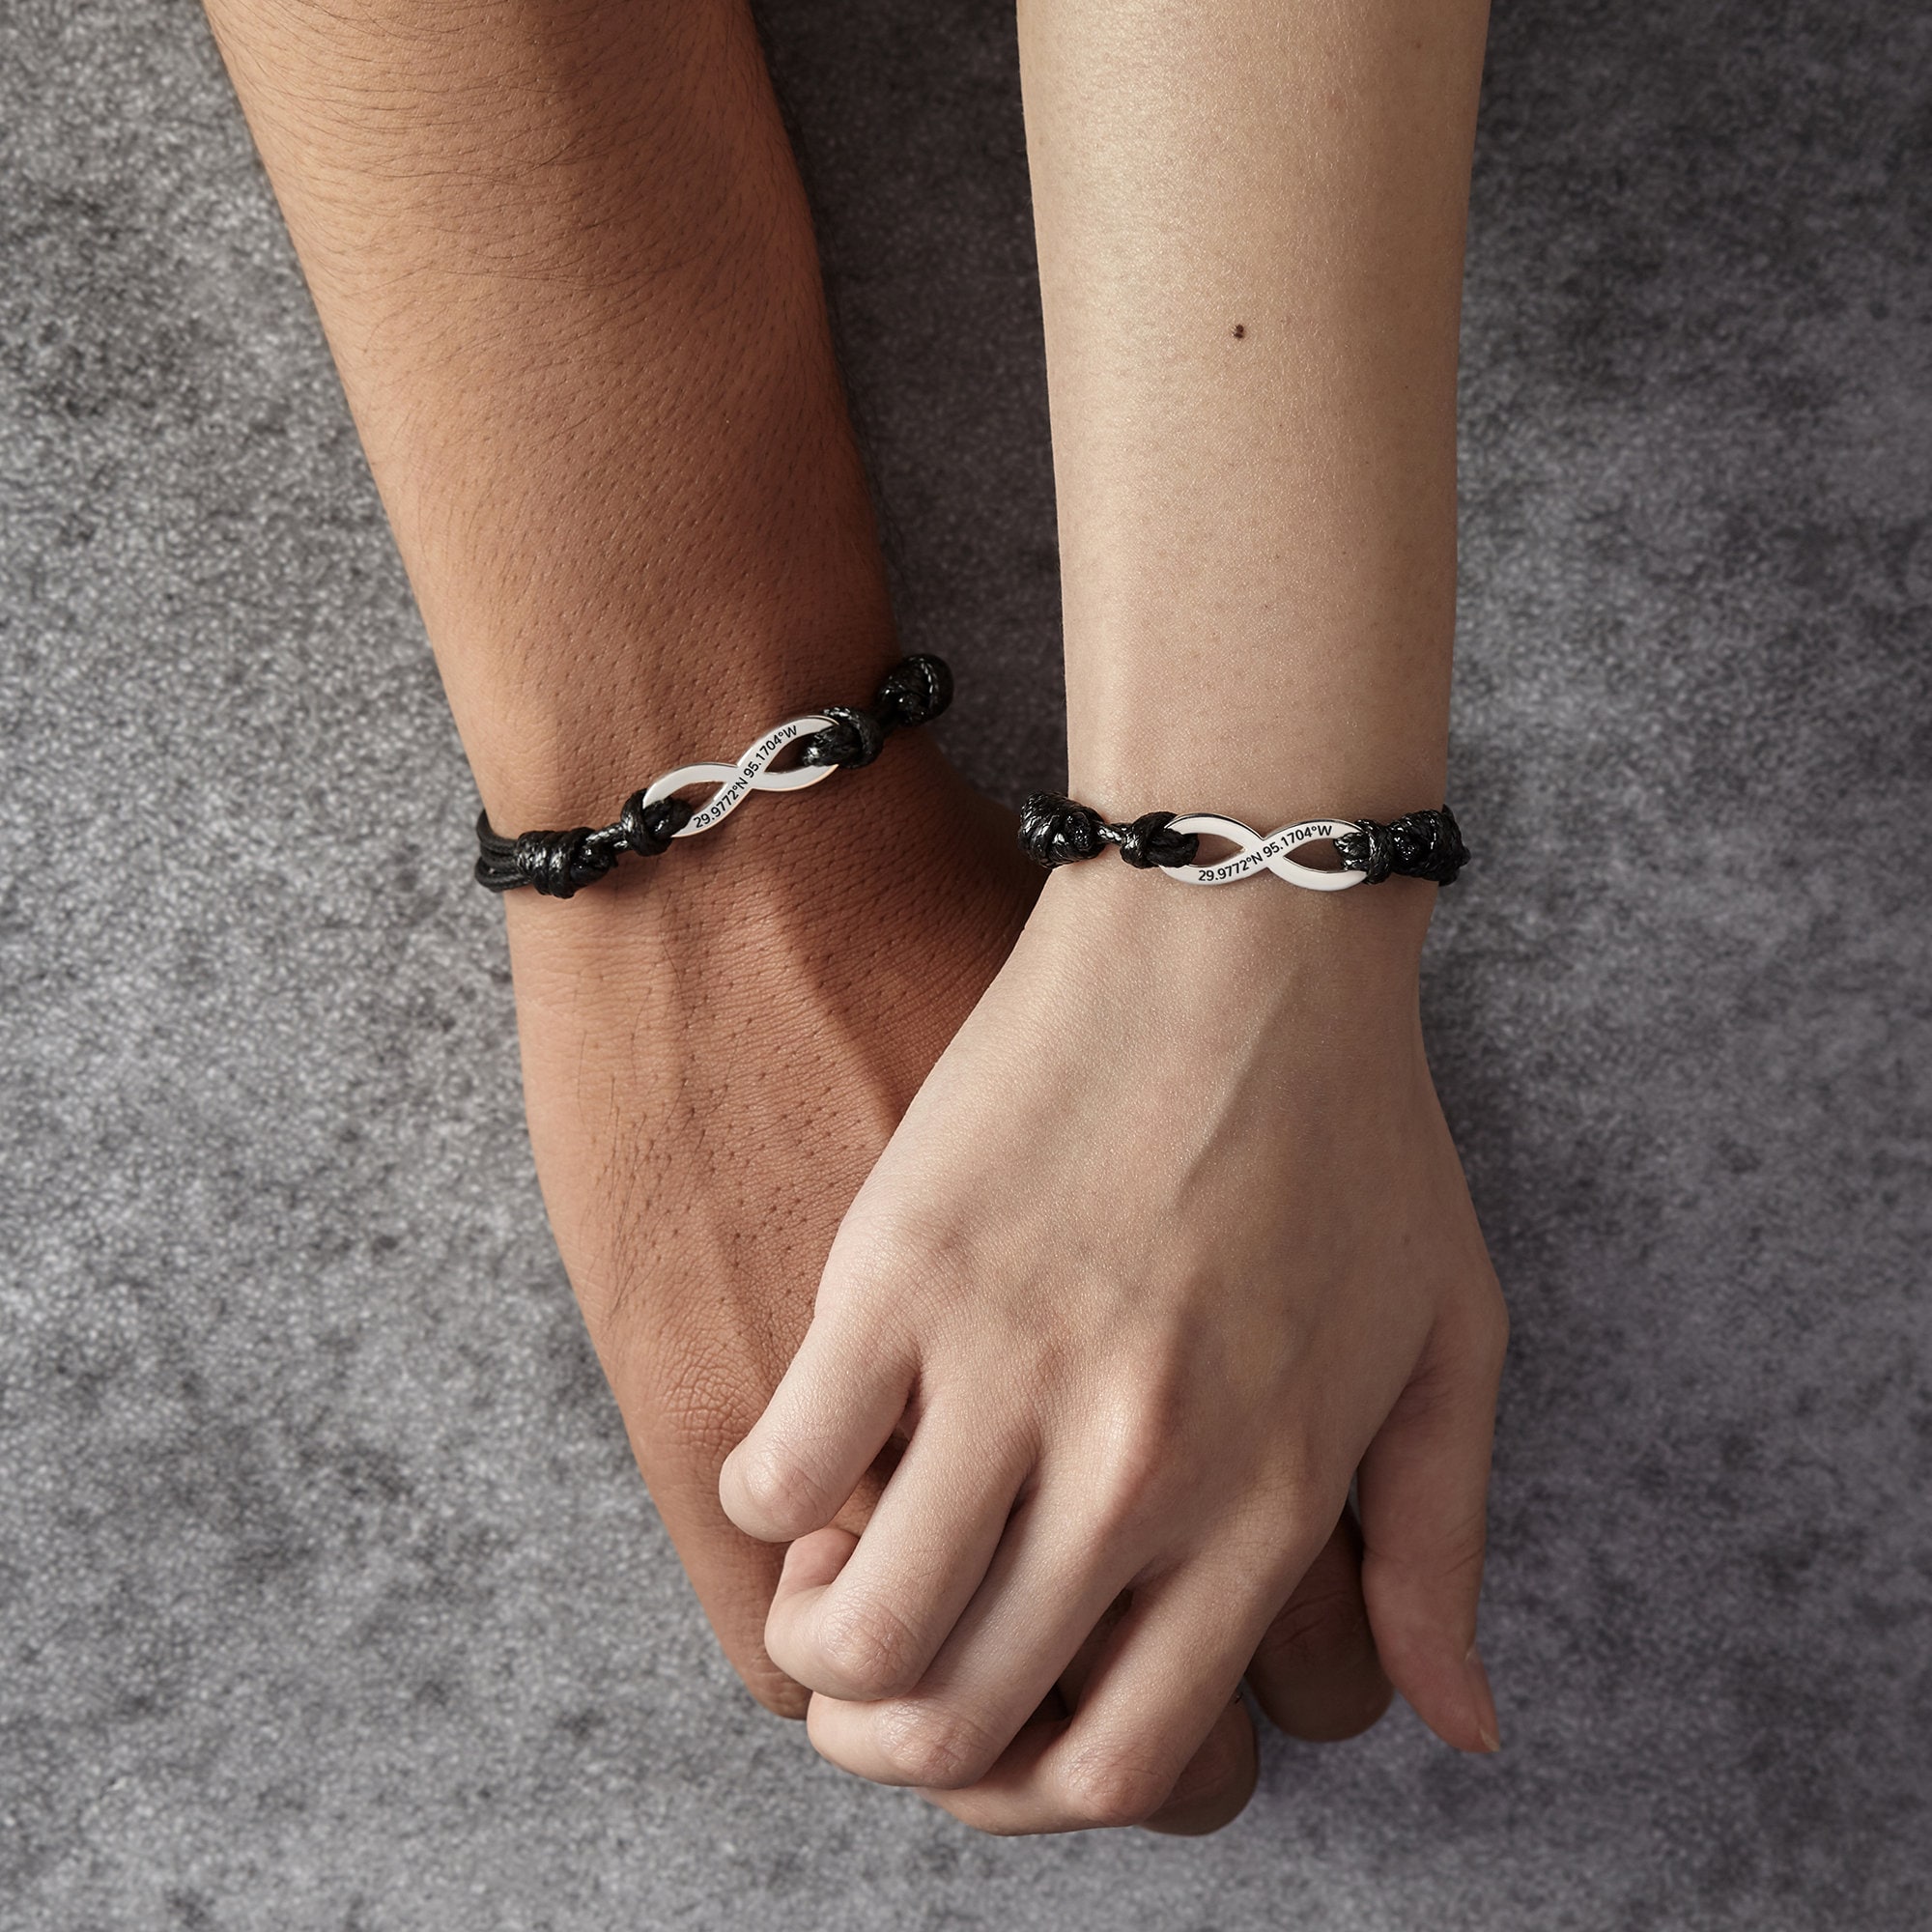 Couple Bracelets- Omnia vincit amor, His and Her Bracelet, Inspiration